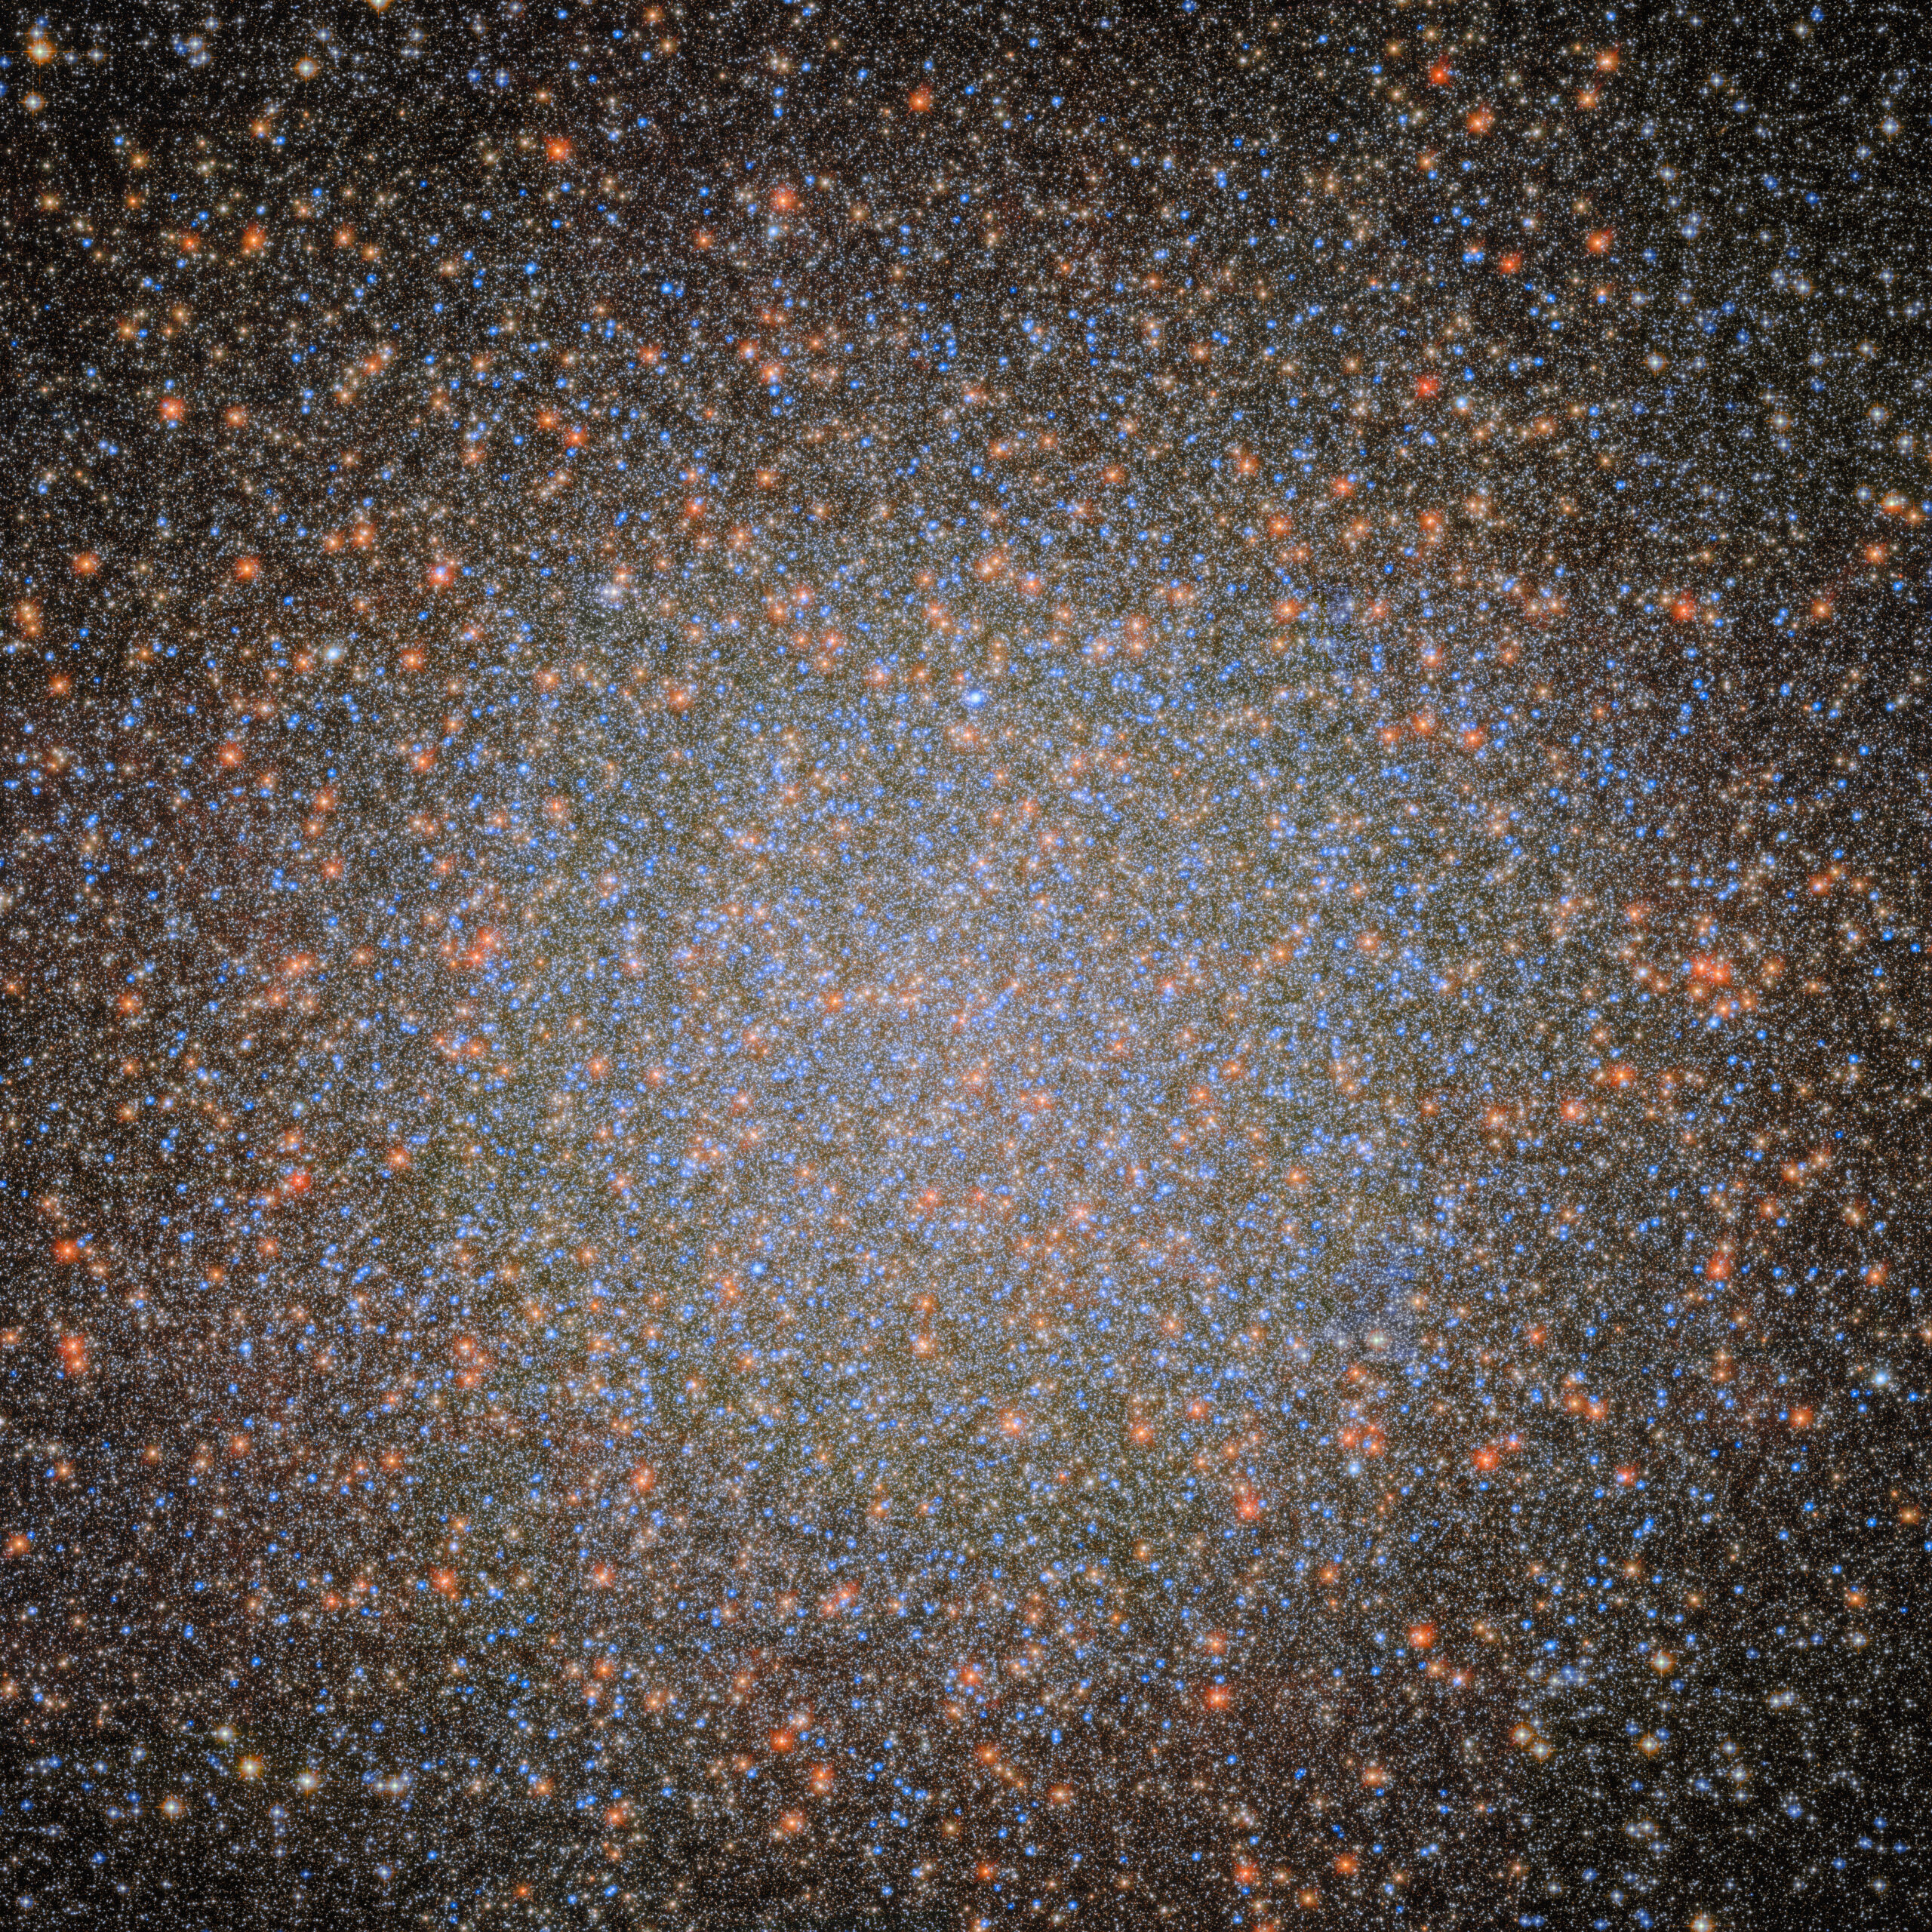 Hubble помог астрономам найти неуловимую черную дыру средней массы